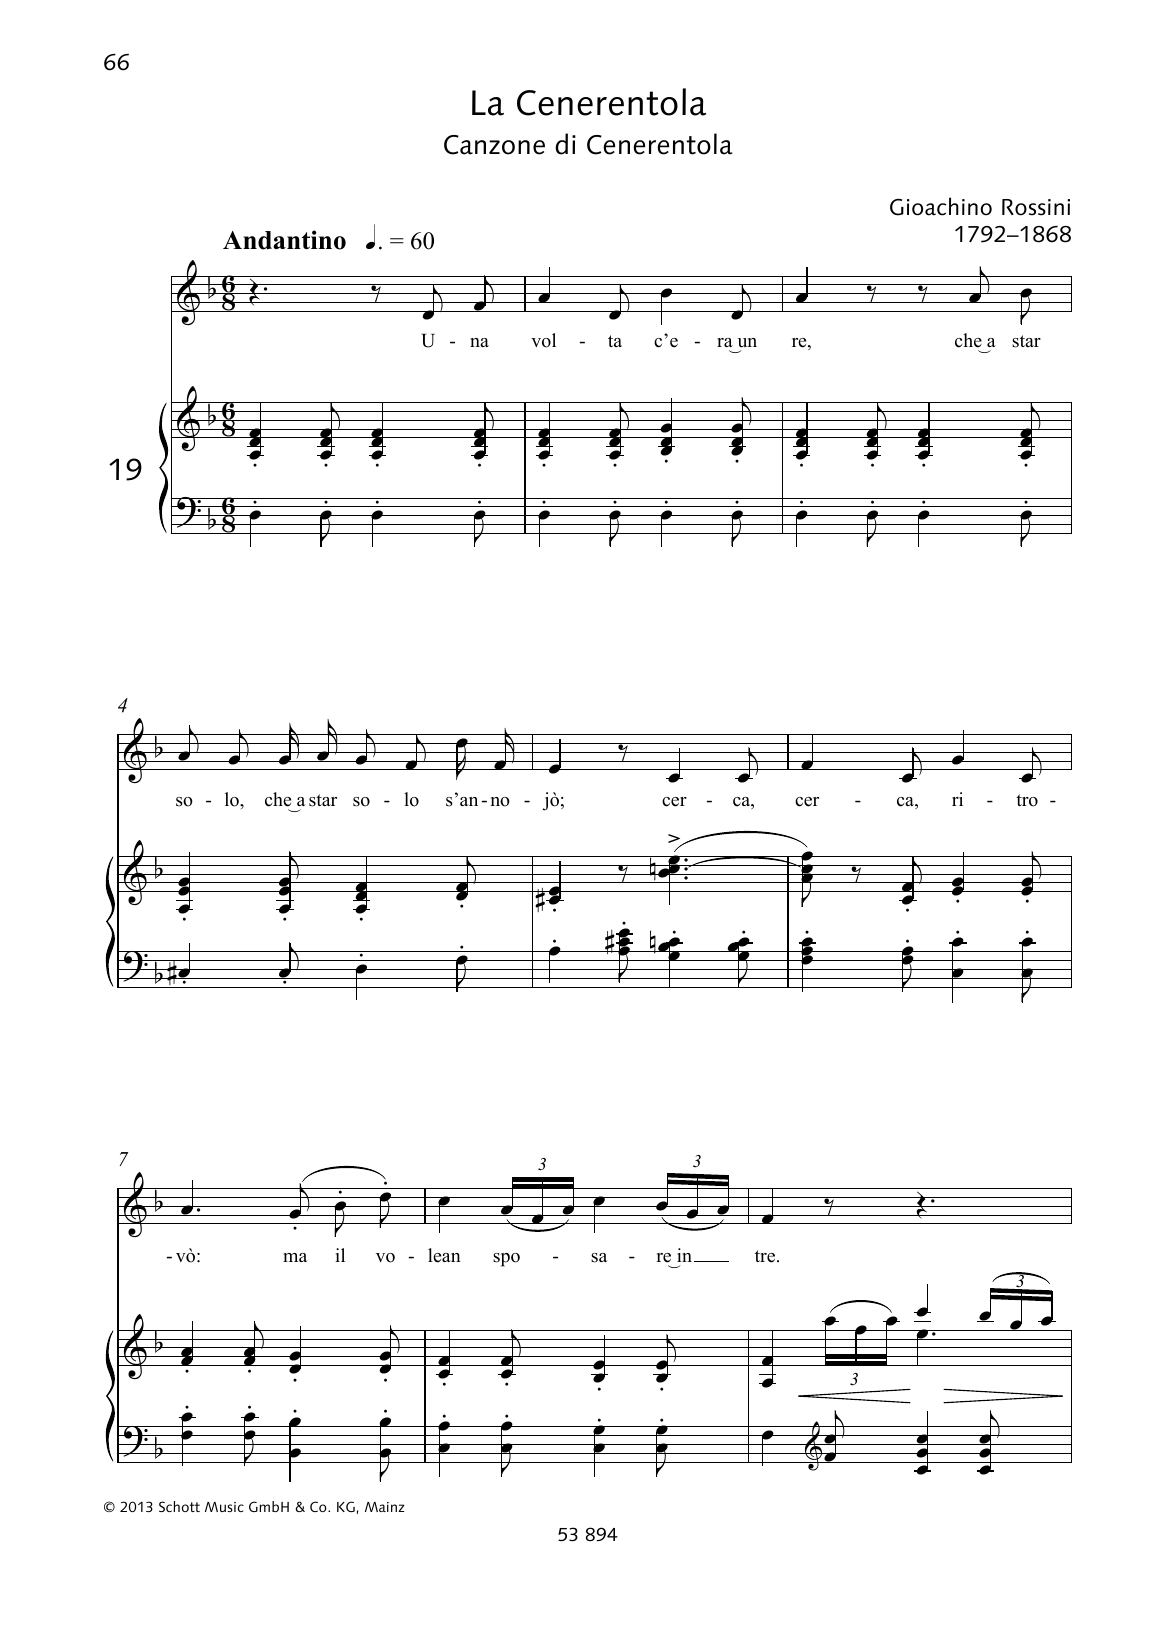 Gioacchino Rossini Una volta c'era unre sheet music notes and chords arranged for Piano & Vocal